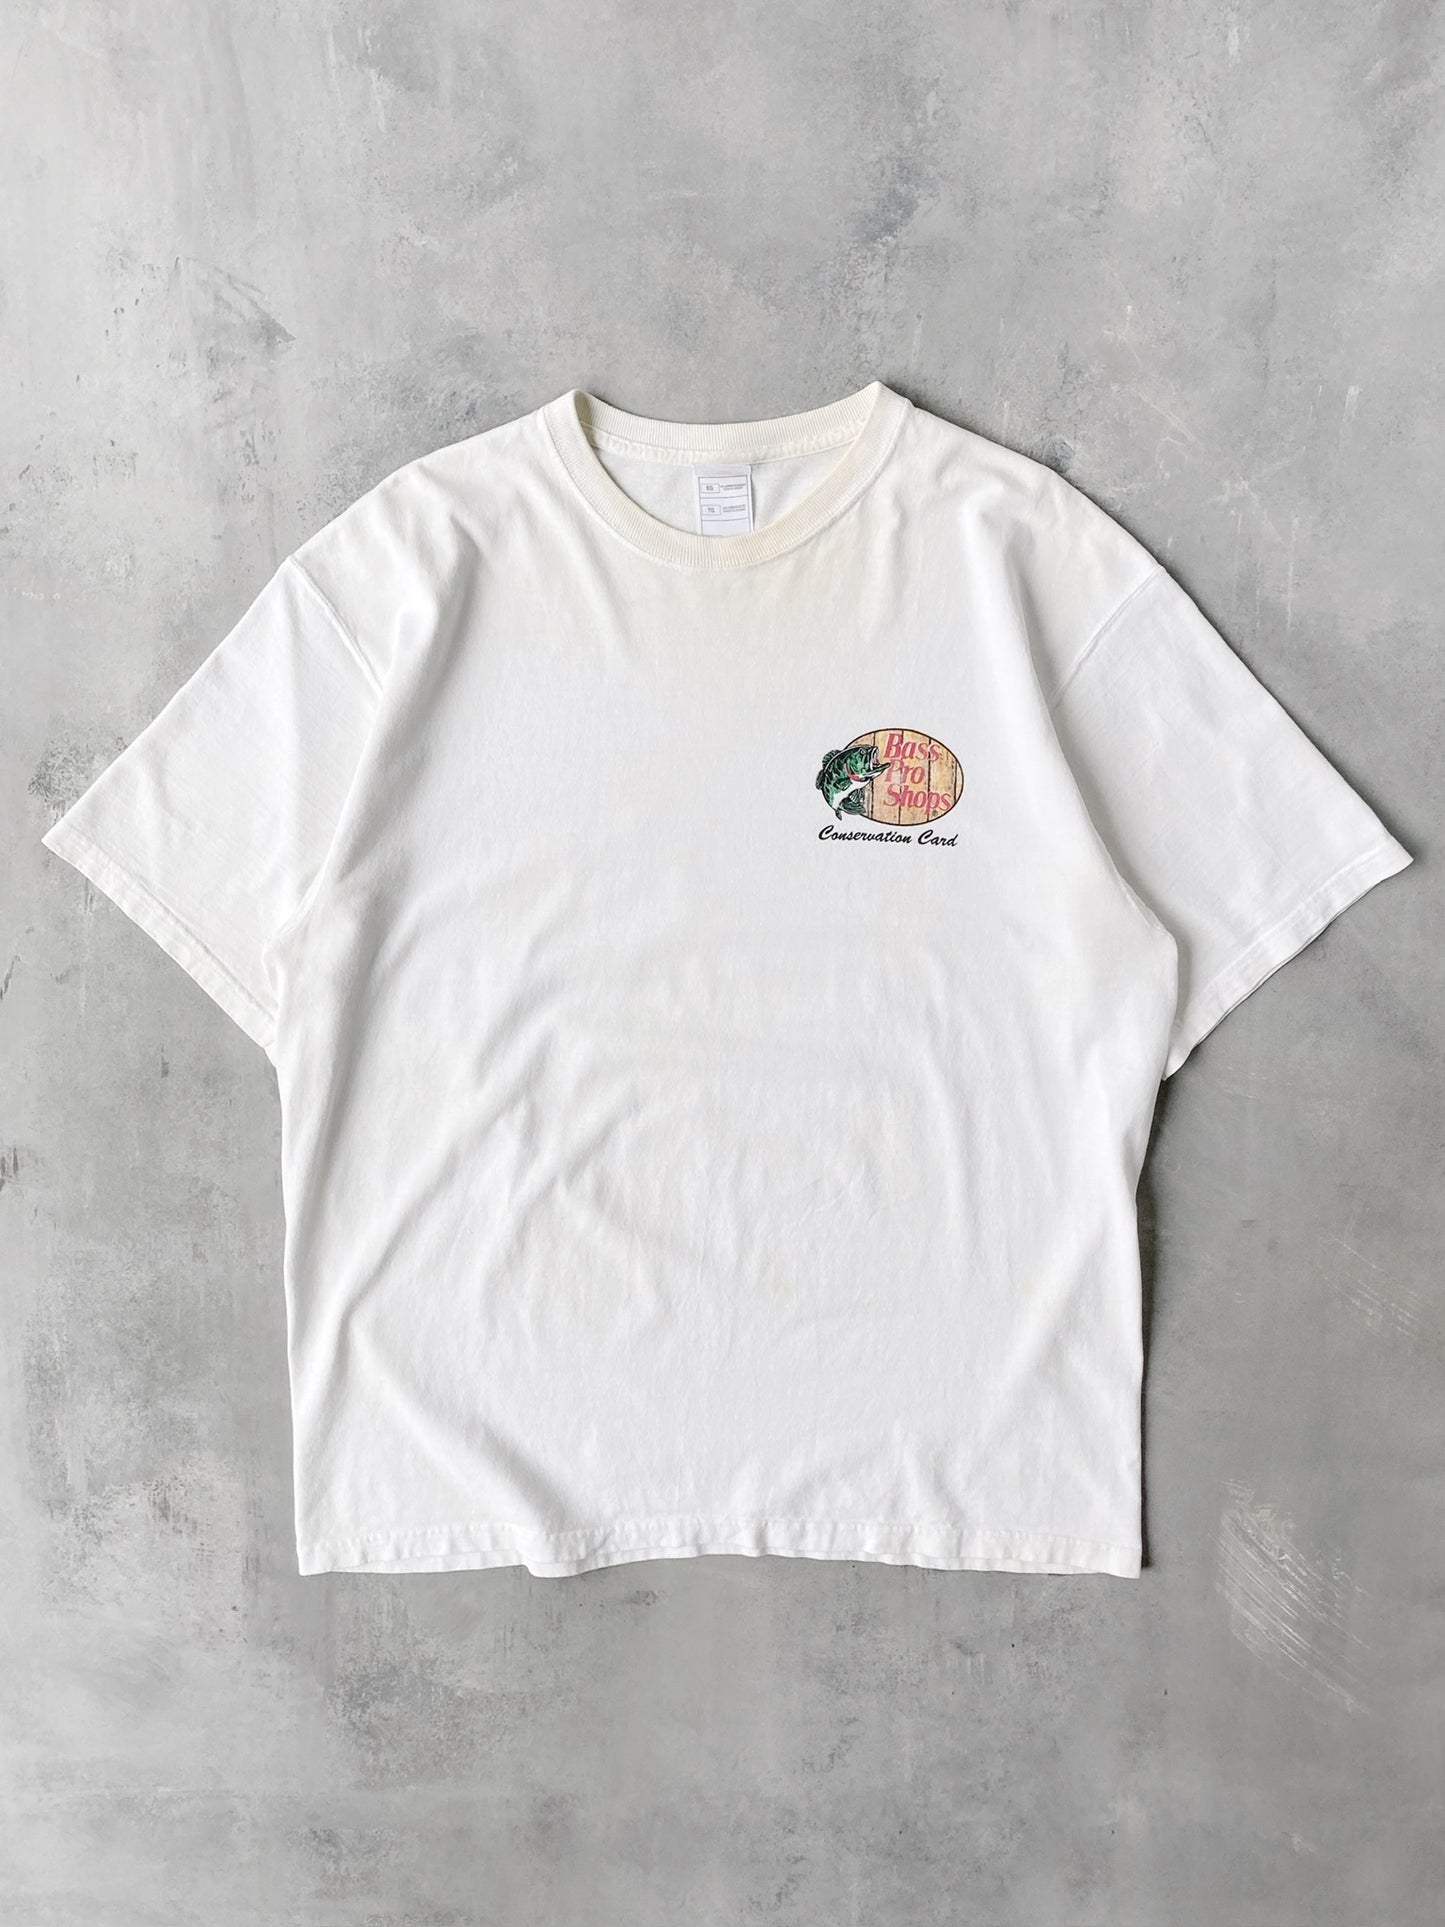 Bass Pro Shops T-Shirt 00's - XL